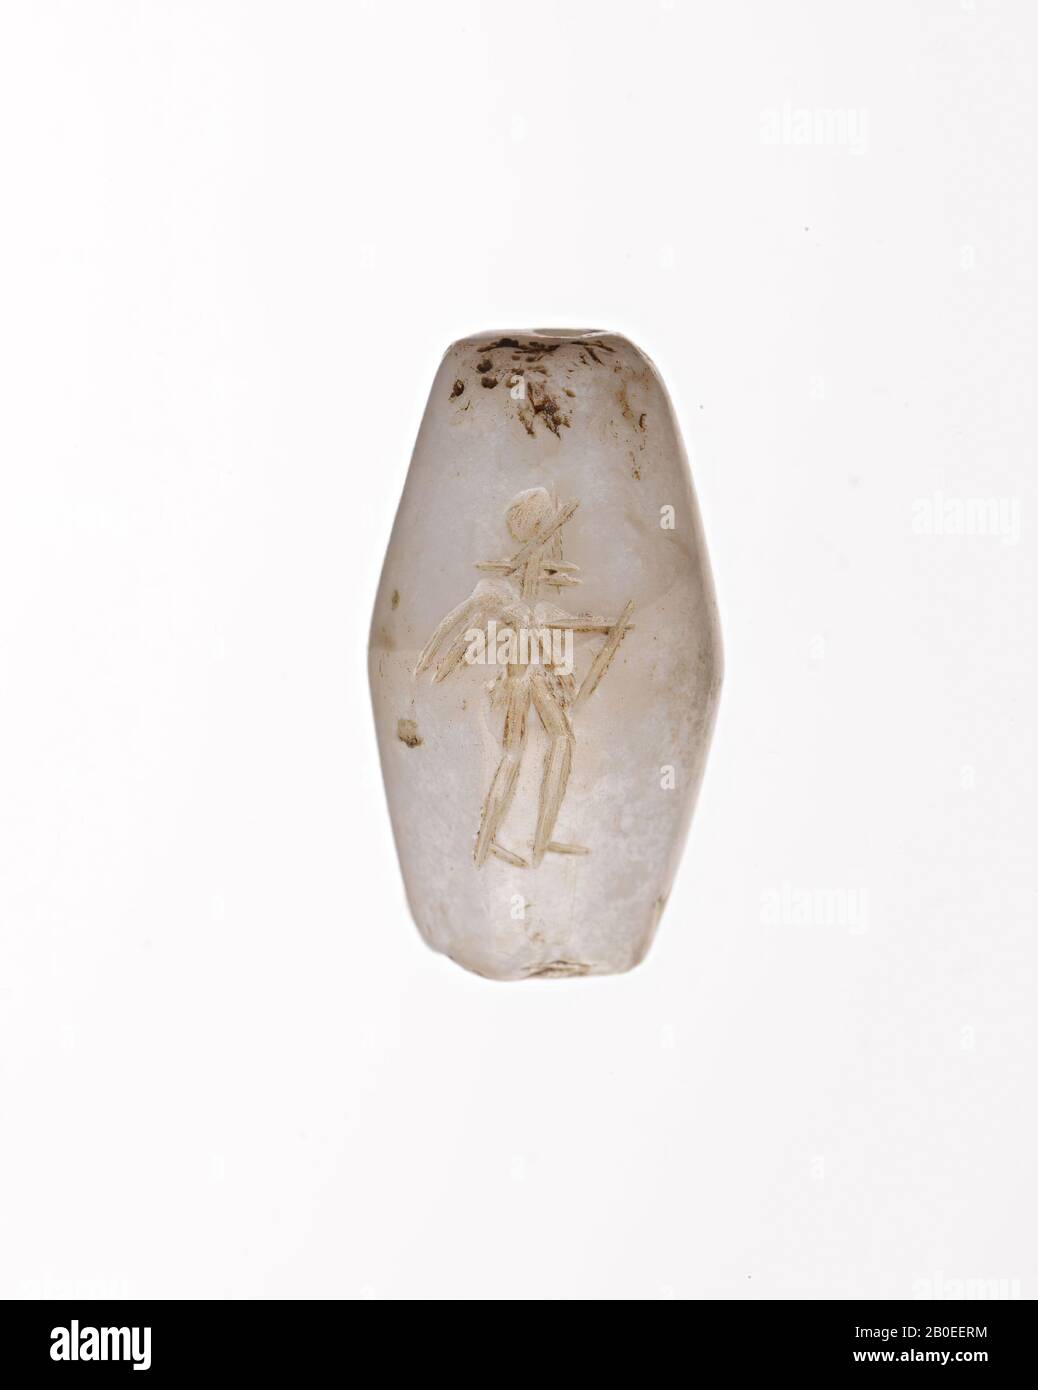 Ein röhrenförmiger Stein mit Rillen, in dem eine Lauffigur verkratzt wurde. Falsch, Dichtung, Stein, weiß, H 2,1 cm, D 1,1 cm, Iran Stockfoto